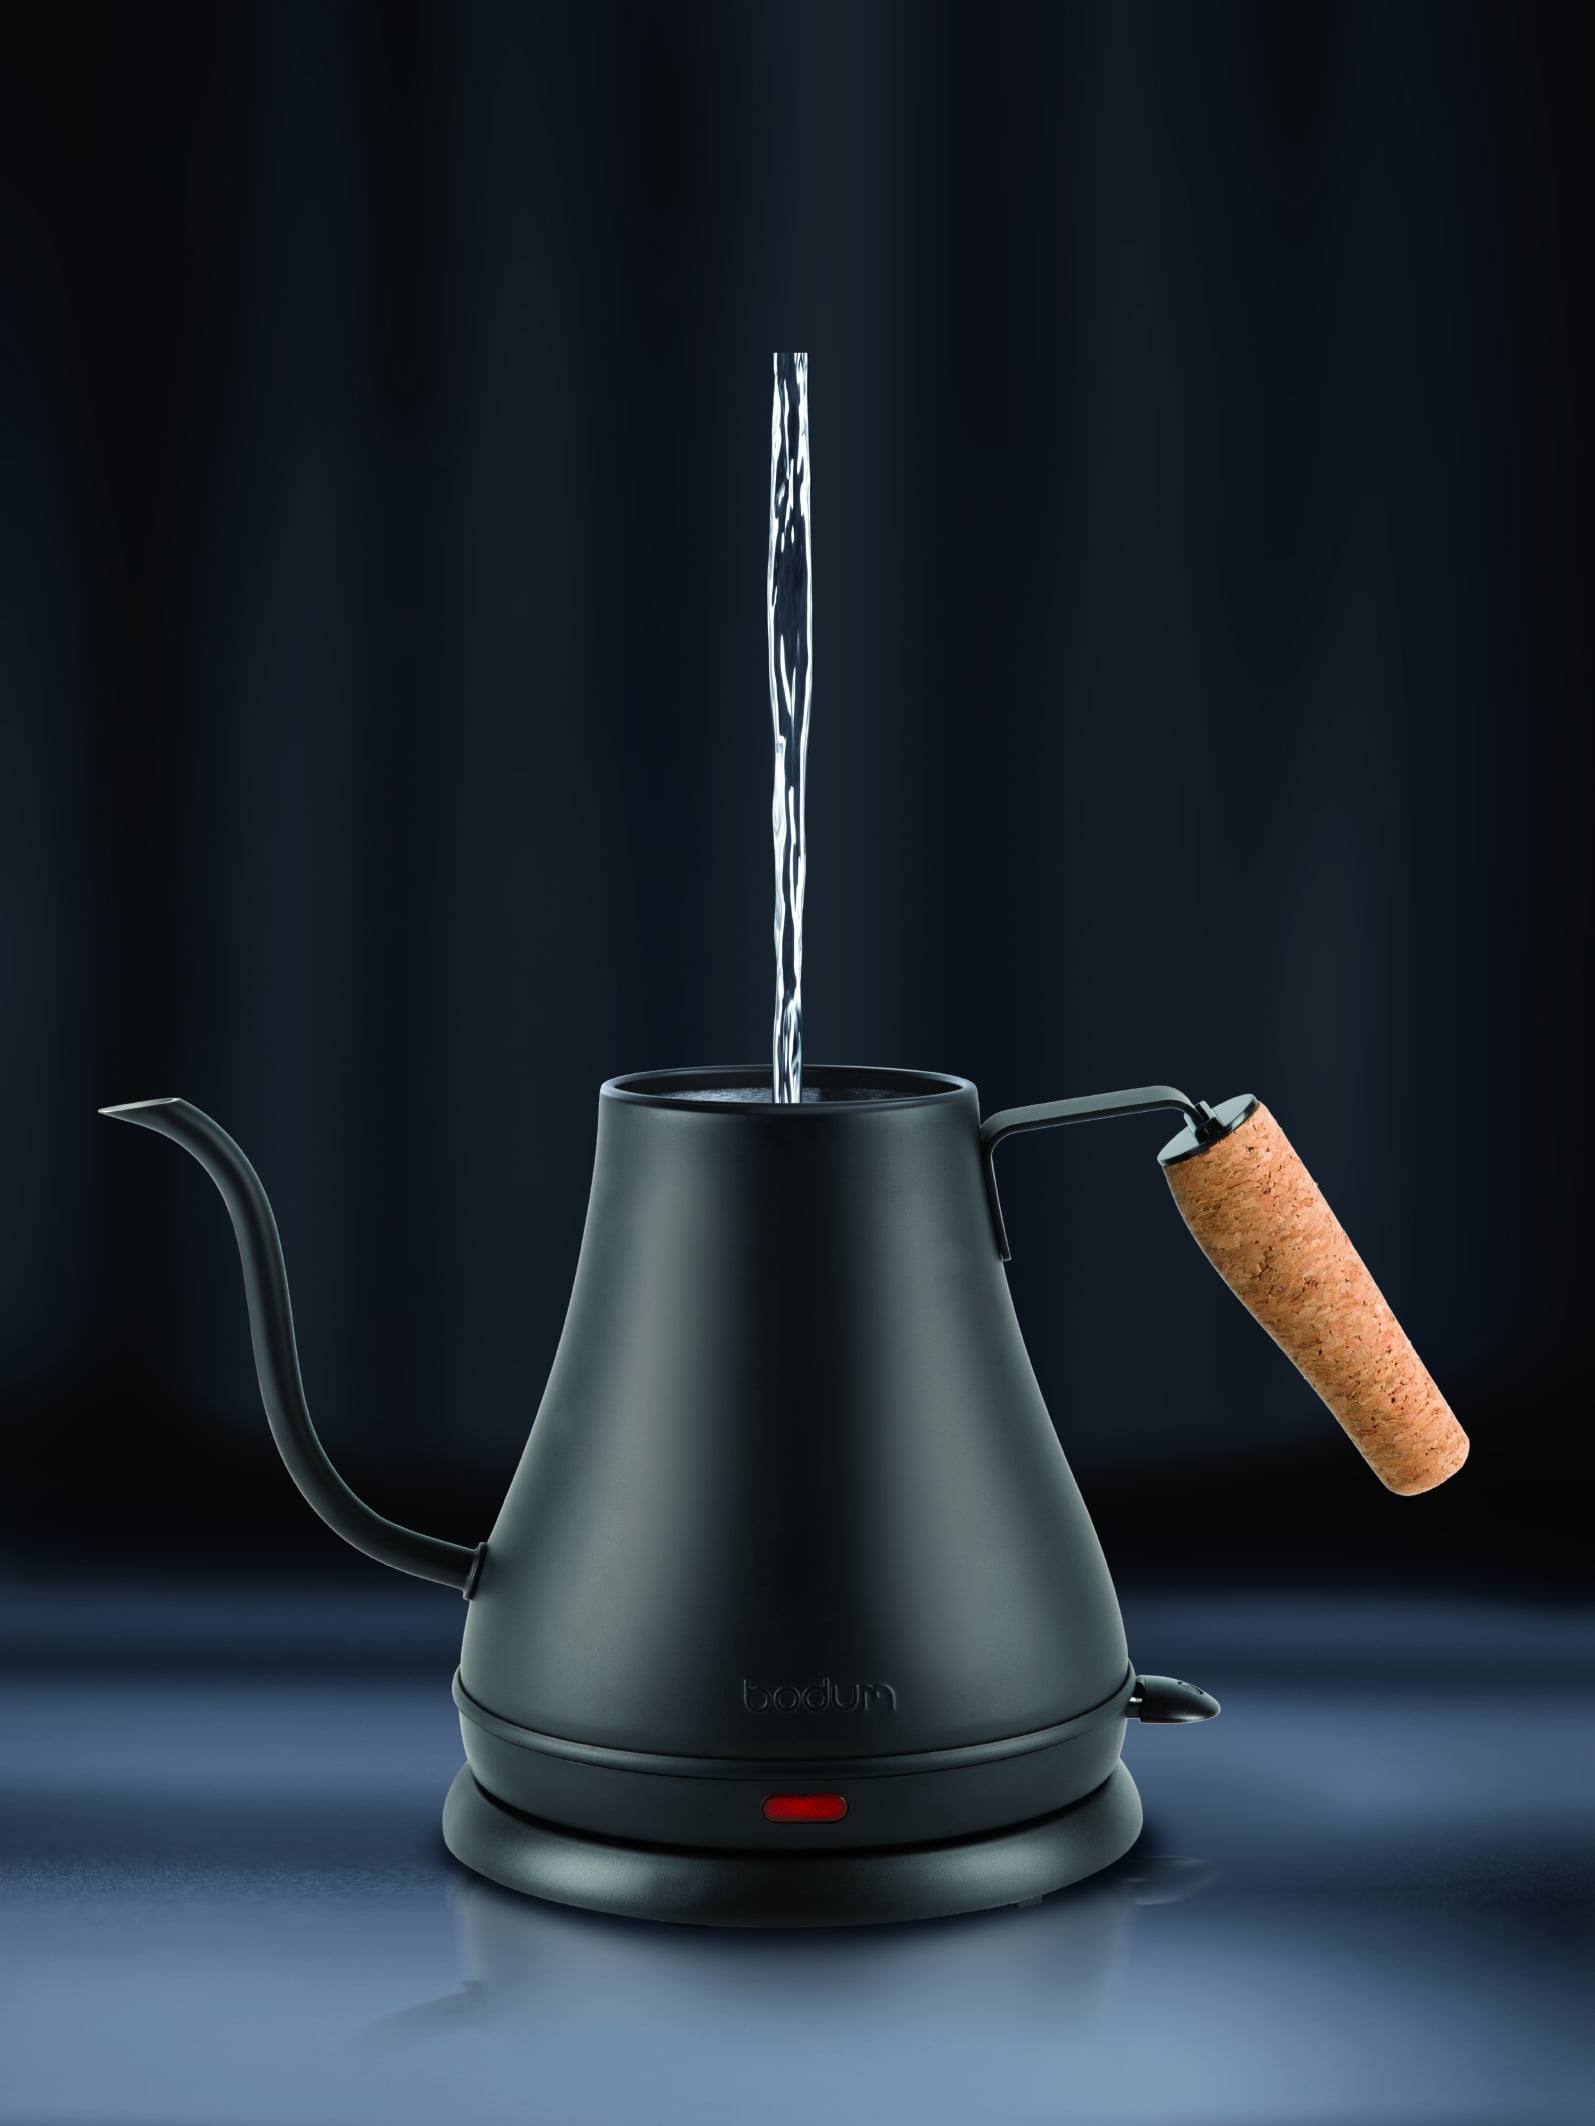 Bodum 1183 Gooseneck Teapot New - appliances - by owner - sale - craigslist